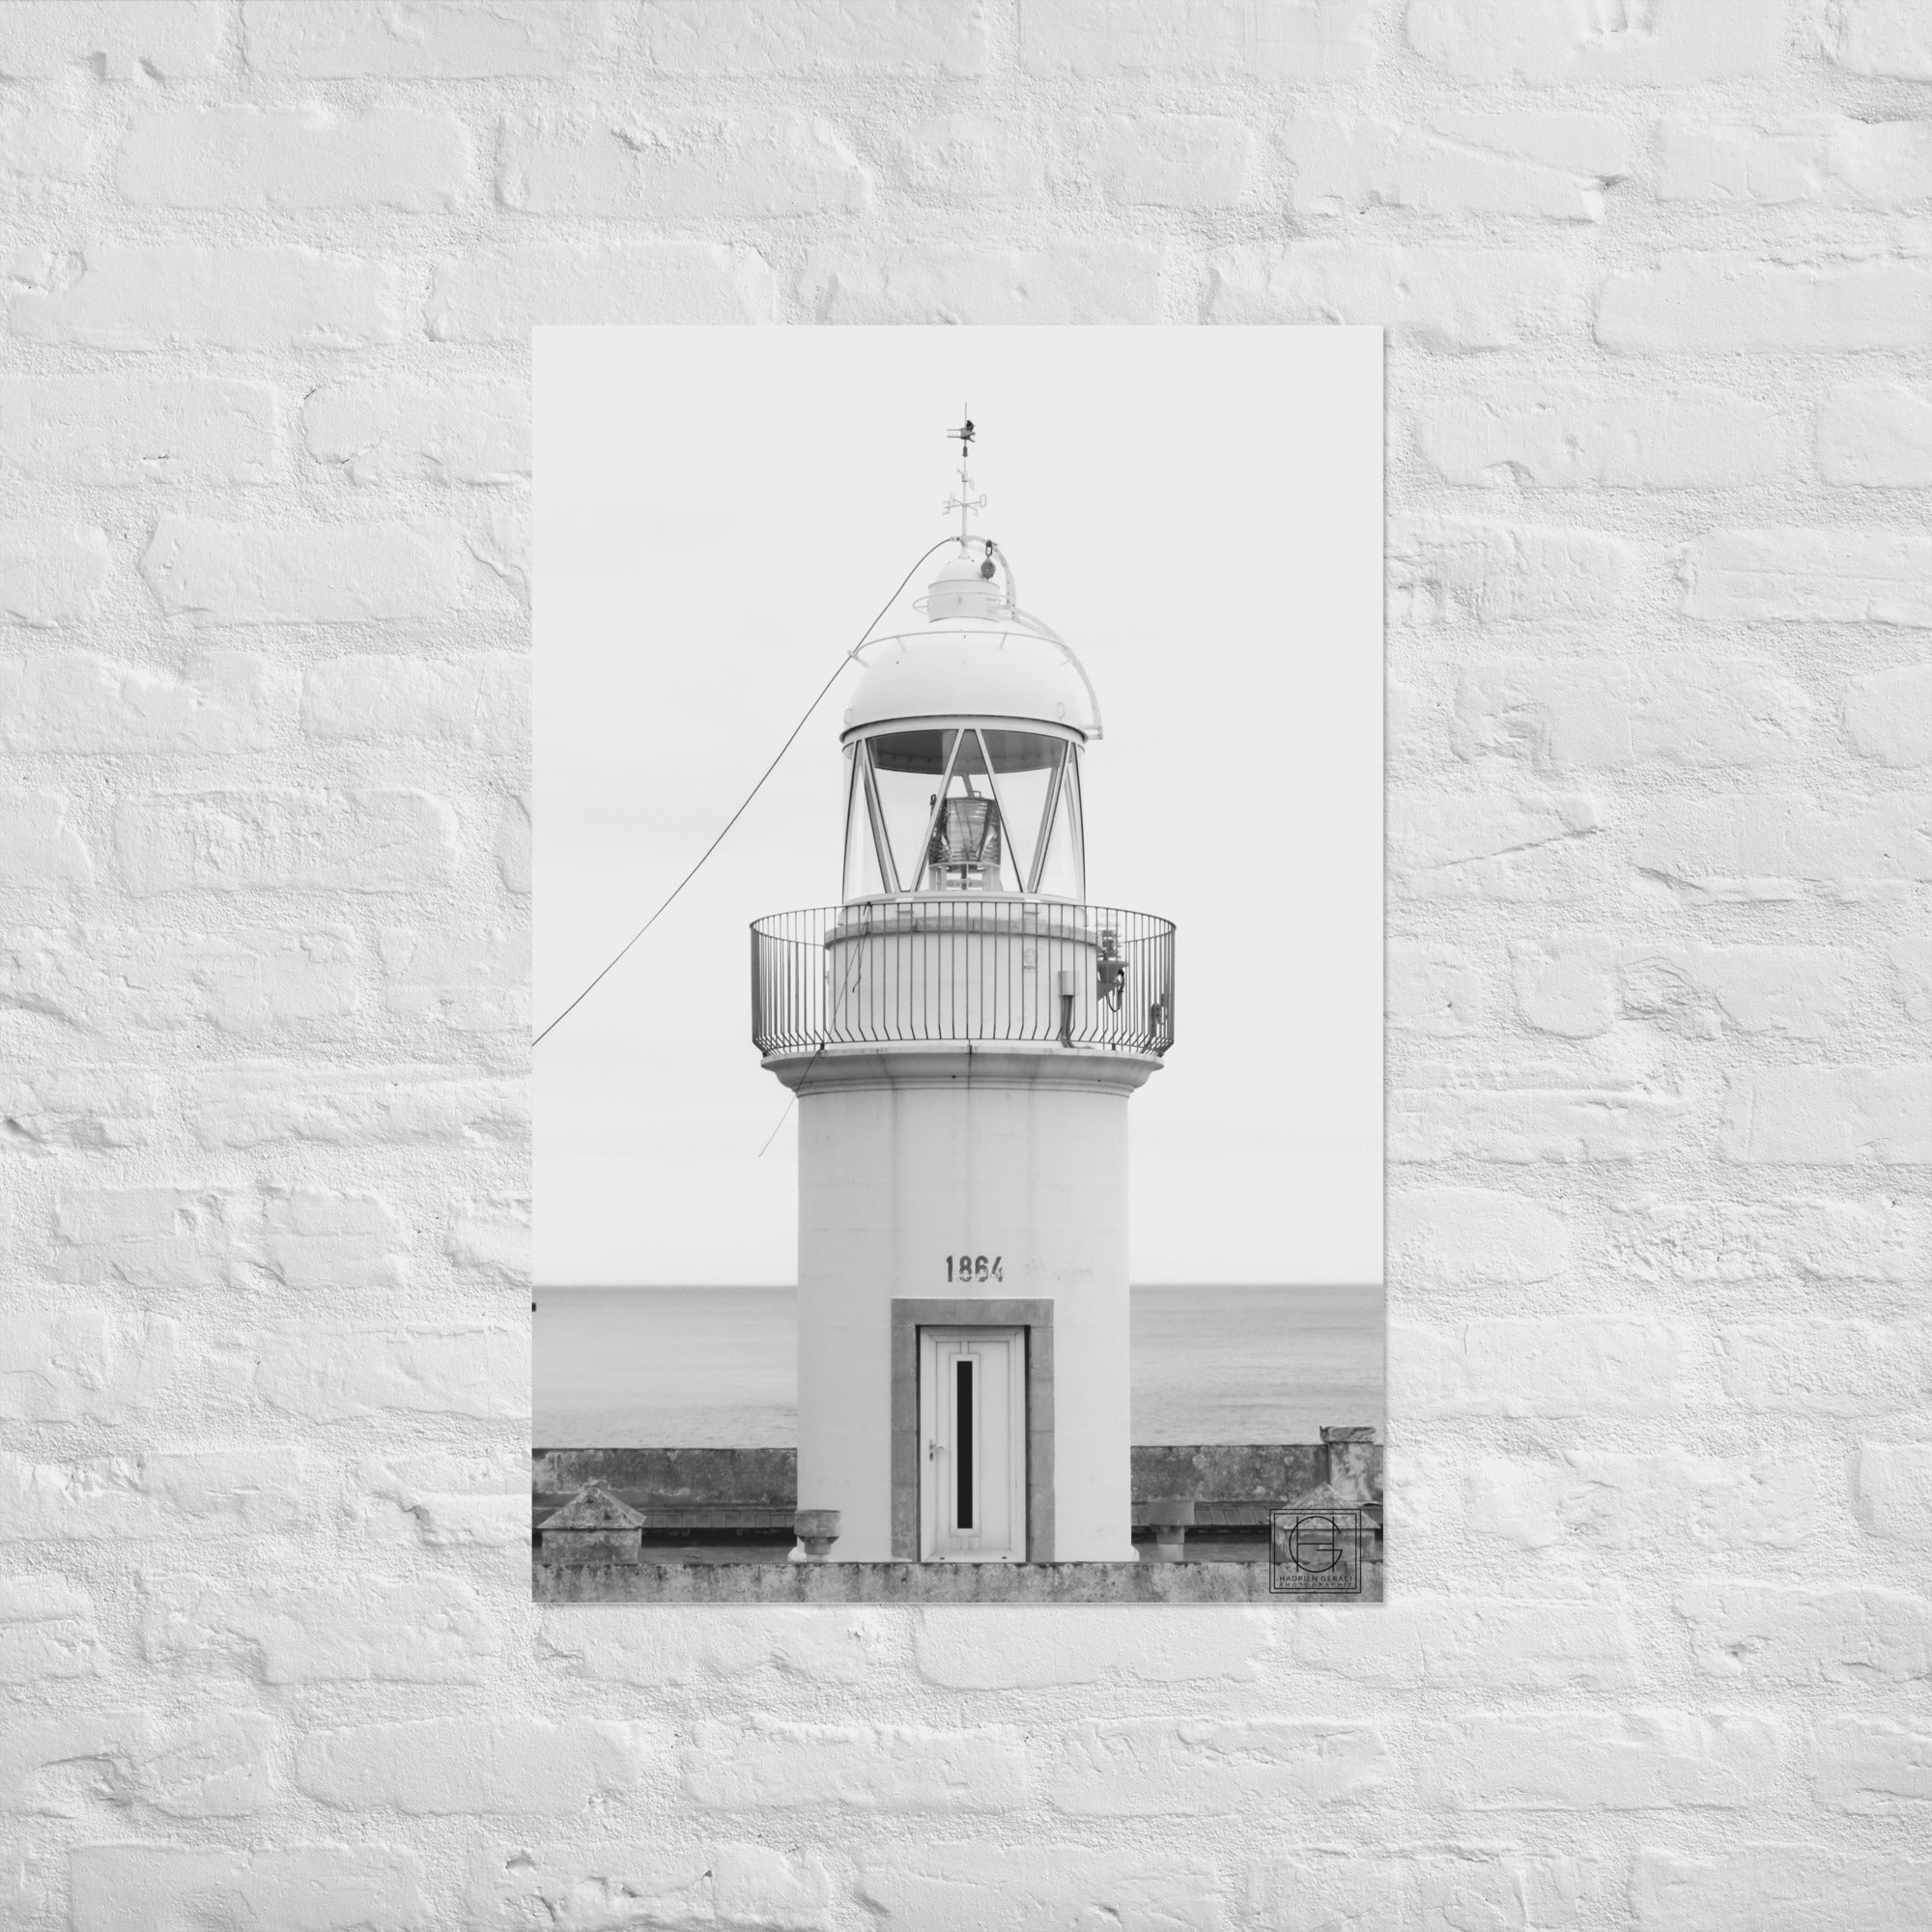 Vue sereine d'un phare historique se dressant contre le ciel azur, capturant l'essence de la tranquillité marine par le talentueux Hadrien Geraci.